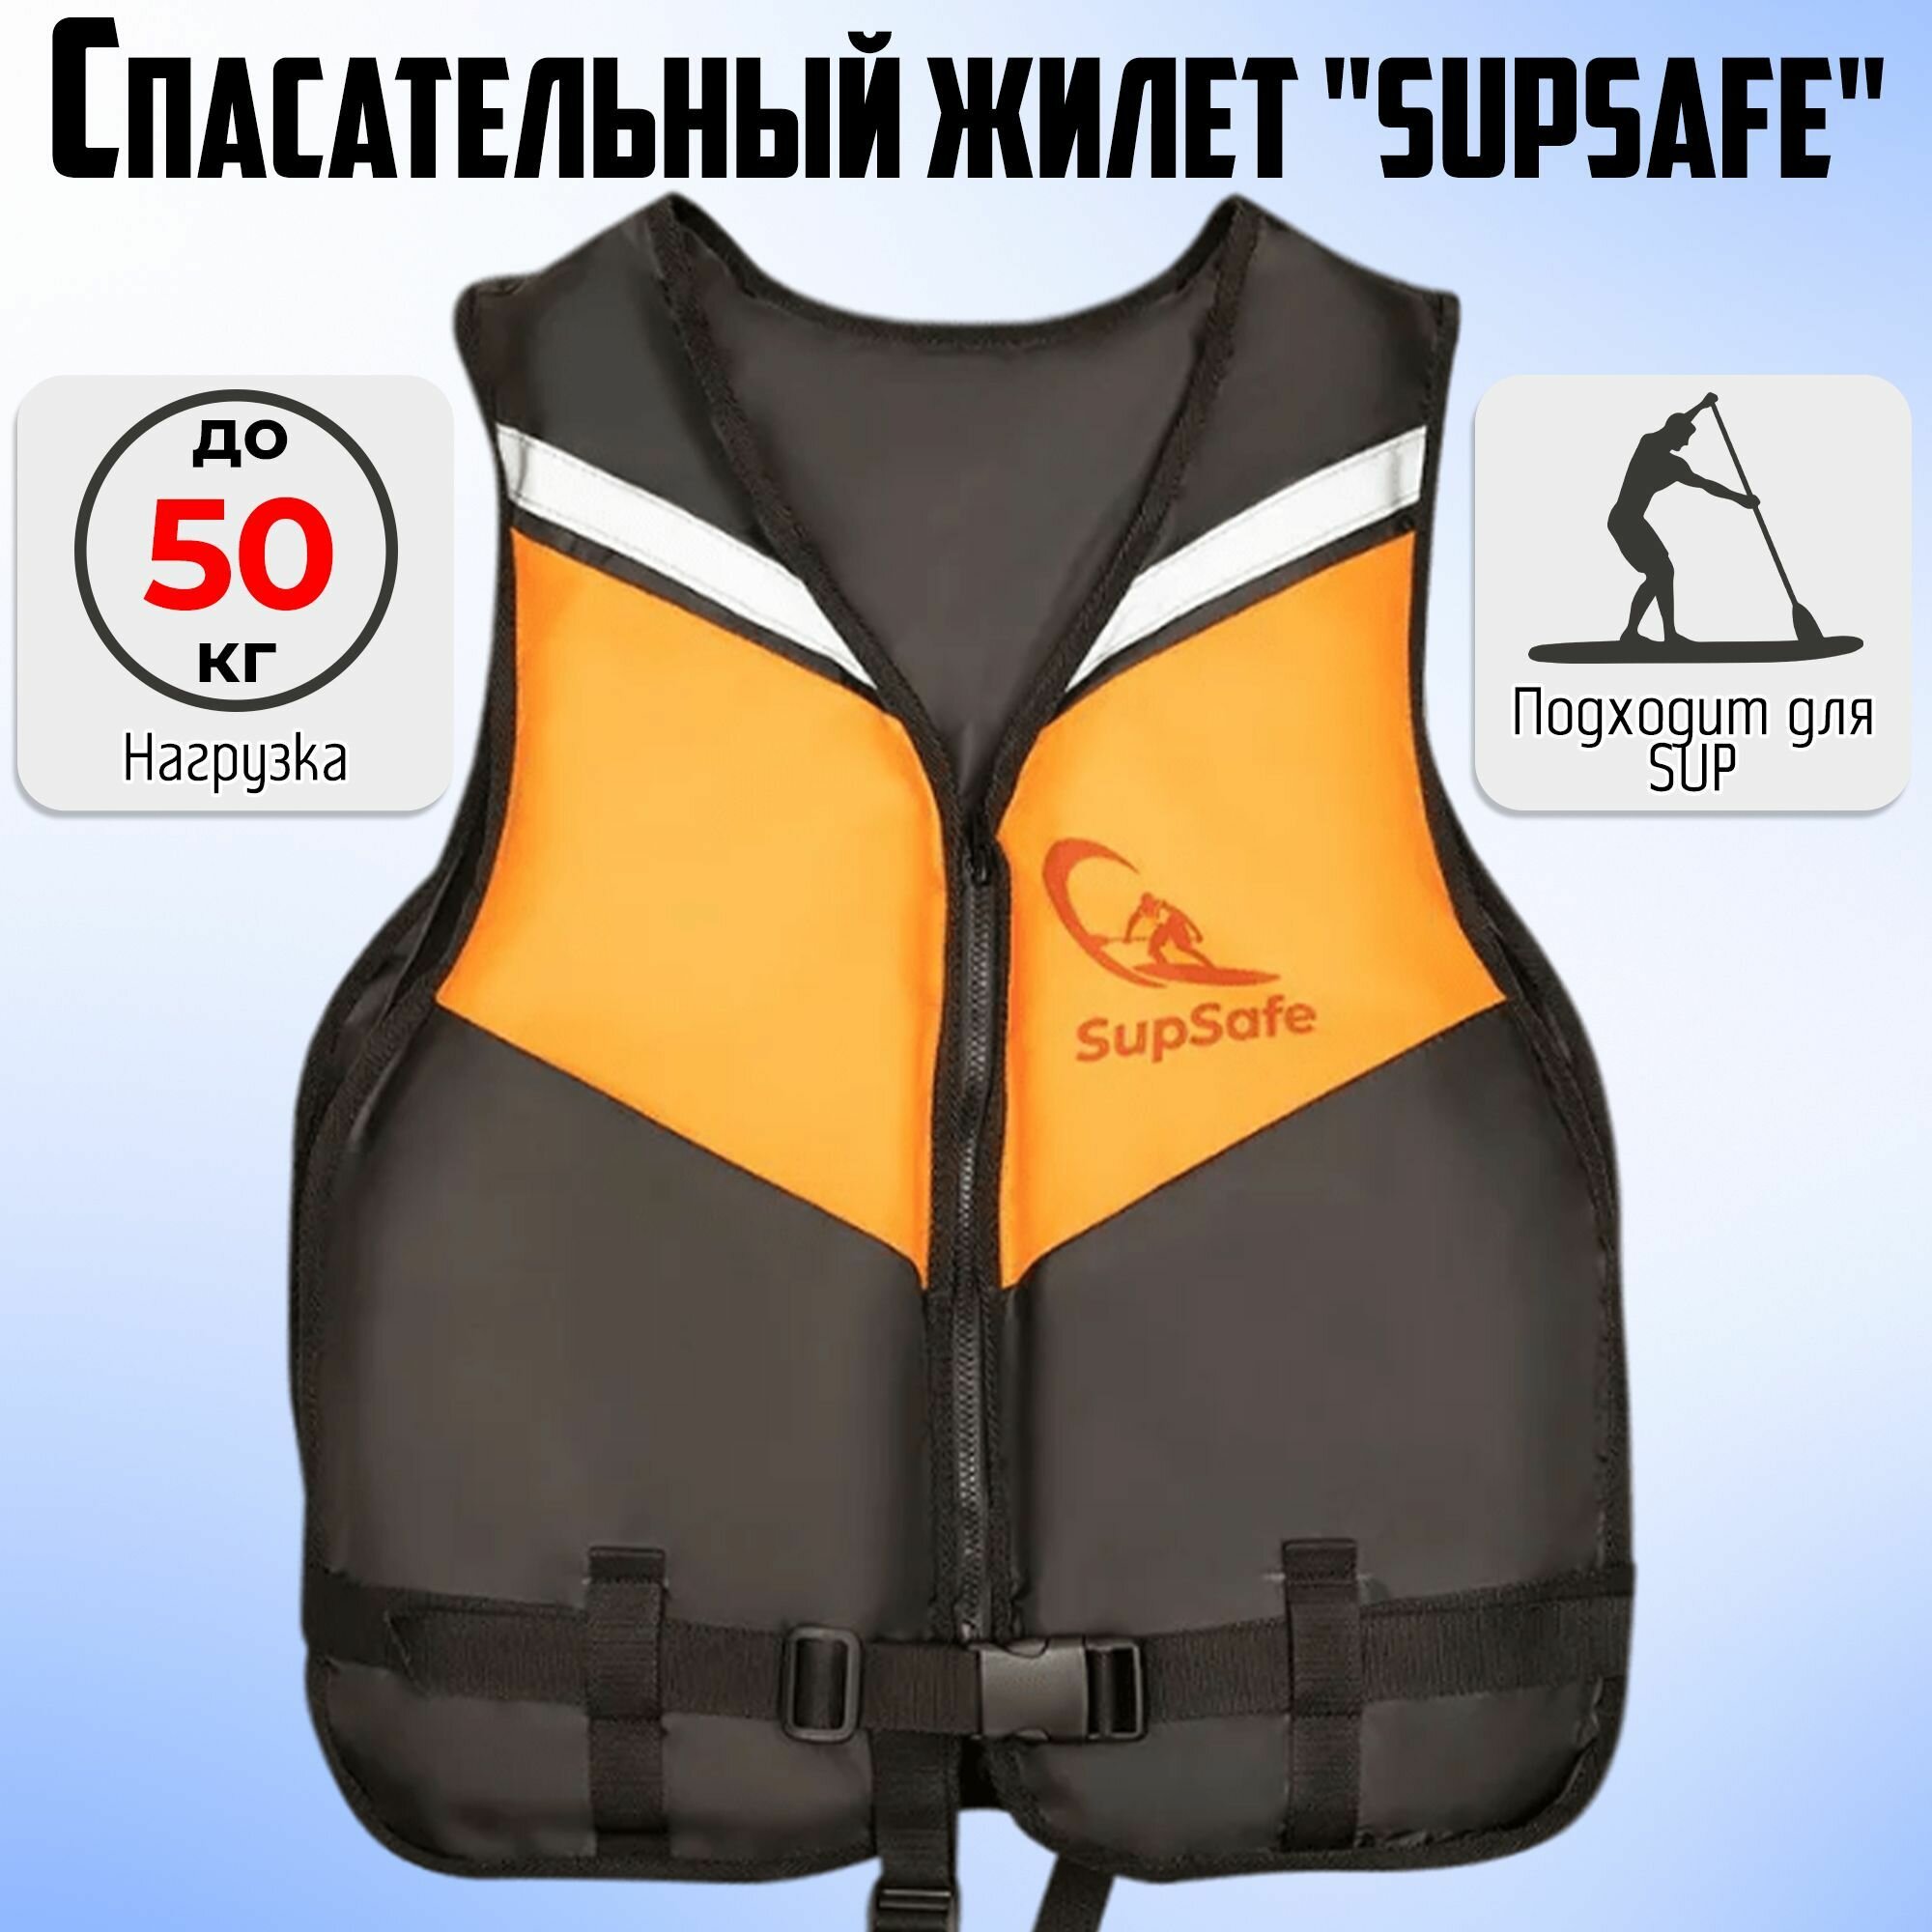 Спасательный жилет SupSafe до 50 кг, 42-44 черный; оранжевый